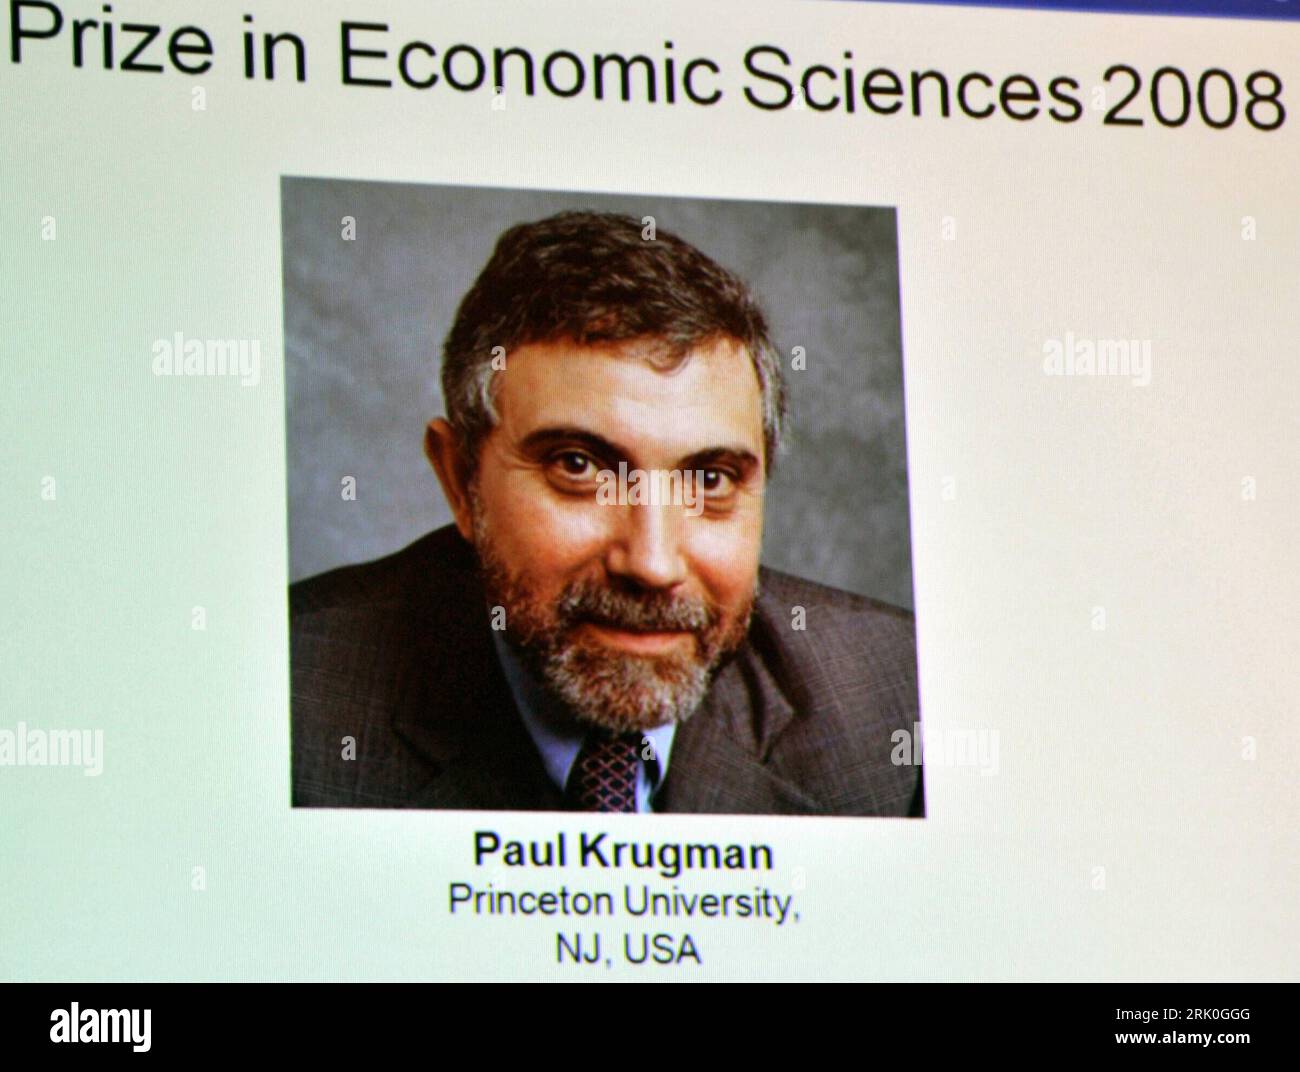 Bildnummer: 52735138  Datum: 13.10.2008  Copyright: imago/Xinhua Ökonom Paul Krugman als Projektion anlässlich seiner Ehrung als Nobelpreisträger der Ökonomie für seine Arbeiten in der Wirtschaftsgeographie in Stockholm PUBLICATIONxNOTxINxCHN, Personen , premiumd; 2008, Stockholm, Wissenschaft, Nobelpreis, Schriftzug; , quer, Kbdig, Einzelbild, Randbild, People    Bildnummer 52735138 Date 13 10 2008 Copyright Imago XINHUA Economist Paul  as Projection during his Ceremony as Nobel Prize winners the Economy for his Work in the Economic Geography in Stockholm PUBLICATIONxNOTxINxCHN People premium Stock Photo